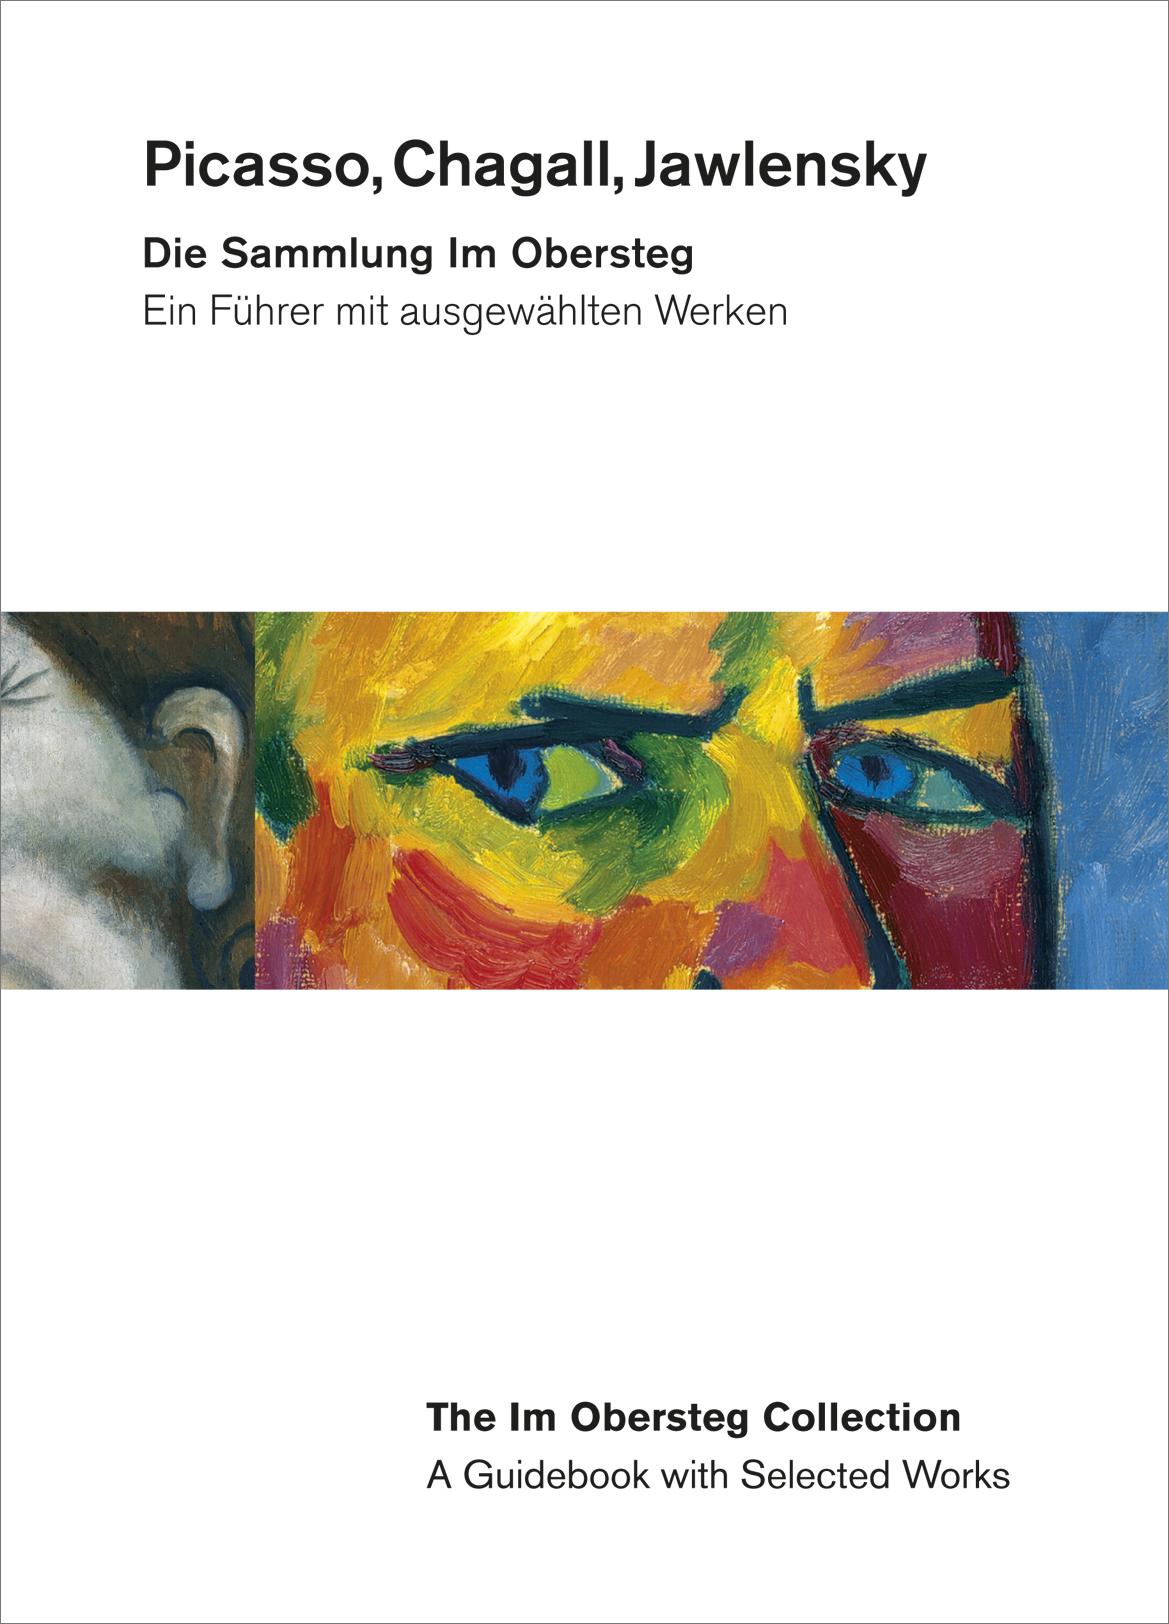 Picasso, Chagall, Jawlensky. Die Sammlung Im Obersteg. Ein Führer mit ausgewählten Werken.